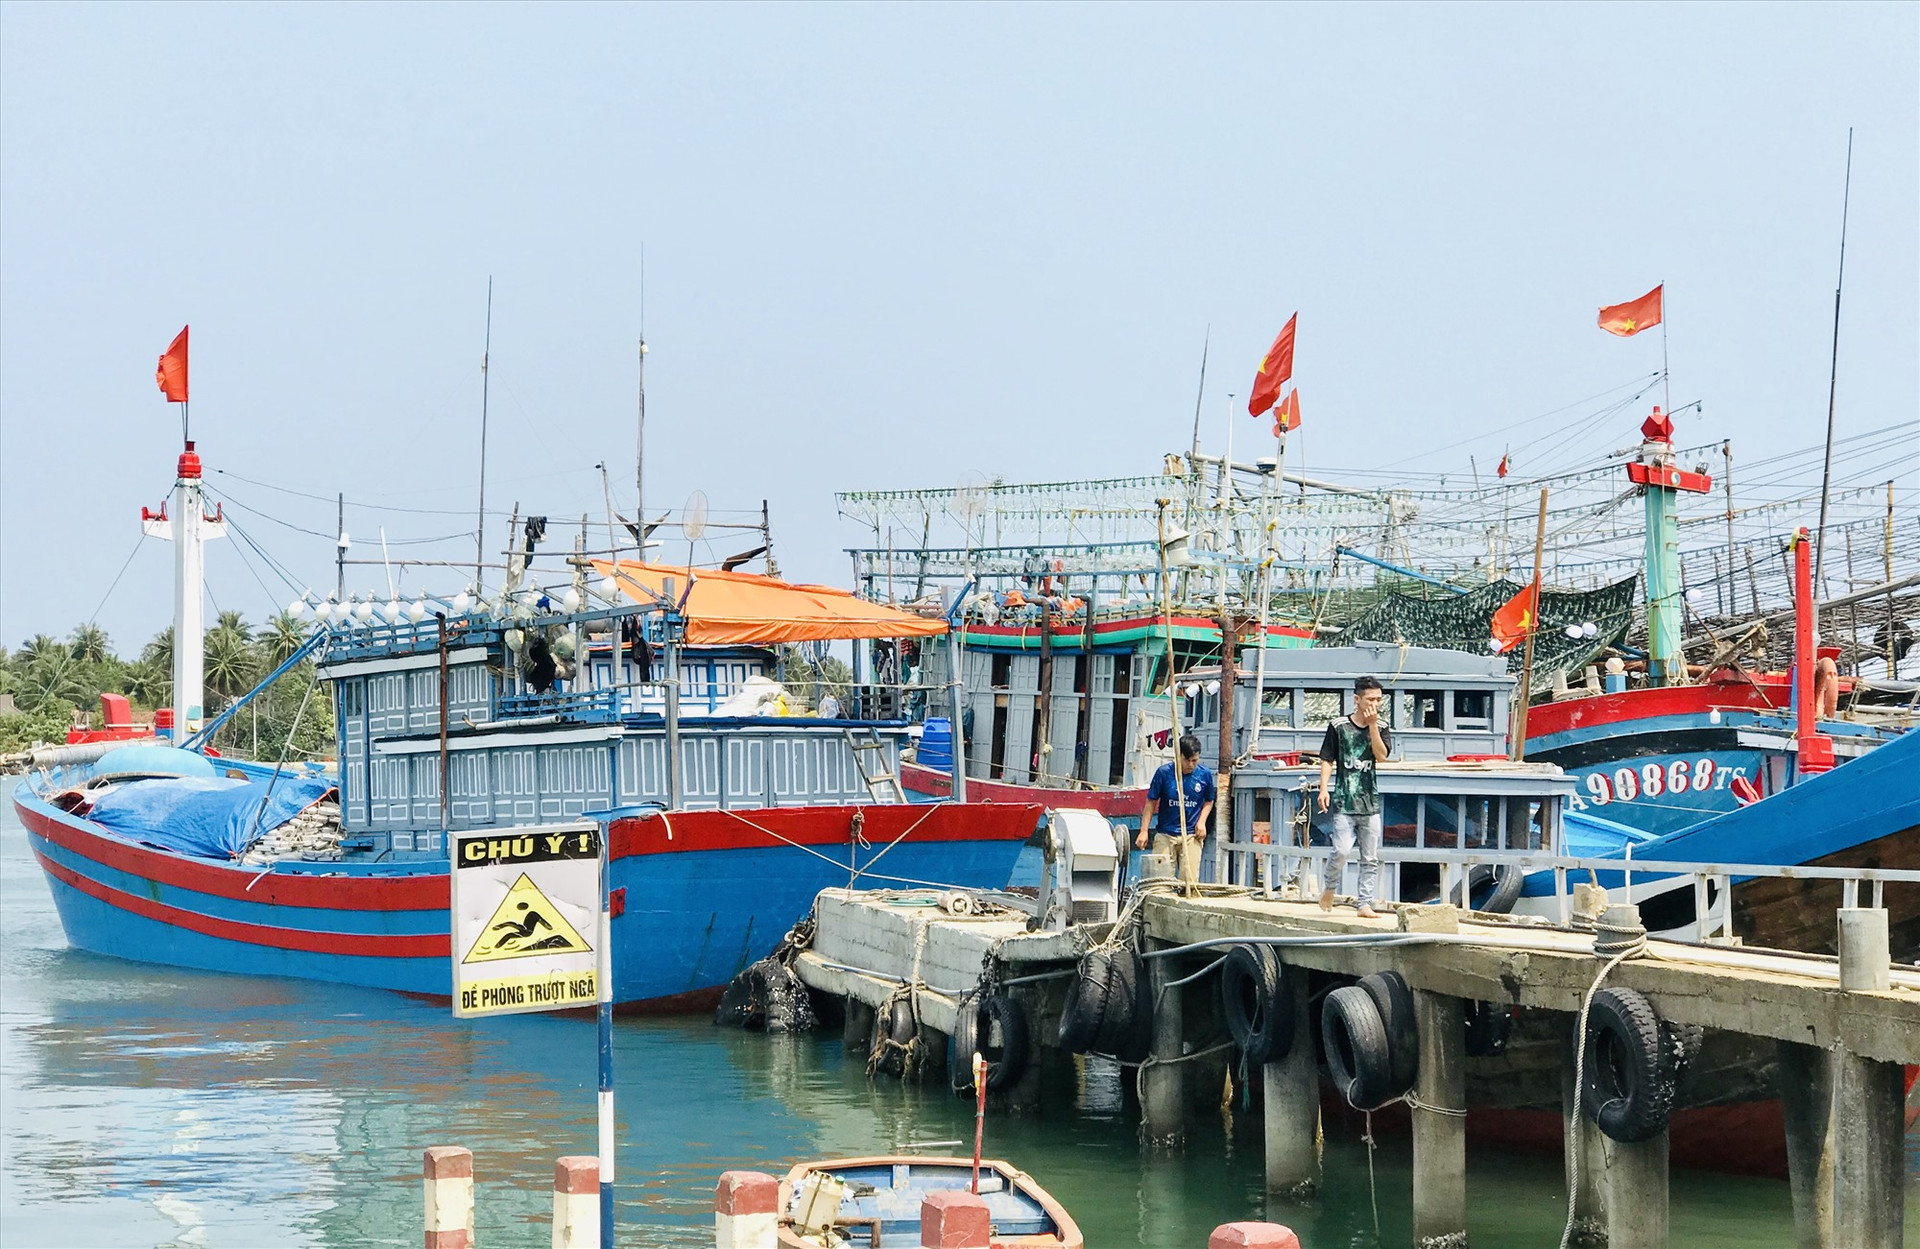 Trên địa bàn xã Tam Quang hiện có 340 tàu khai thác hải sản với tổng công suất gần 100 nghìn CV. Ảnh: Q.T